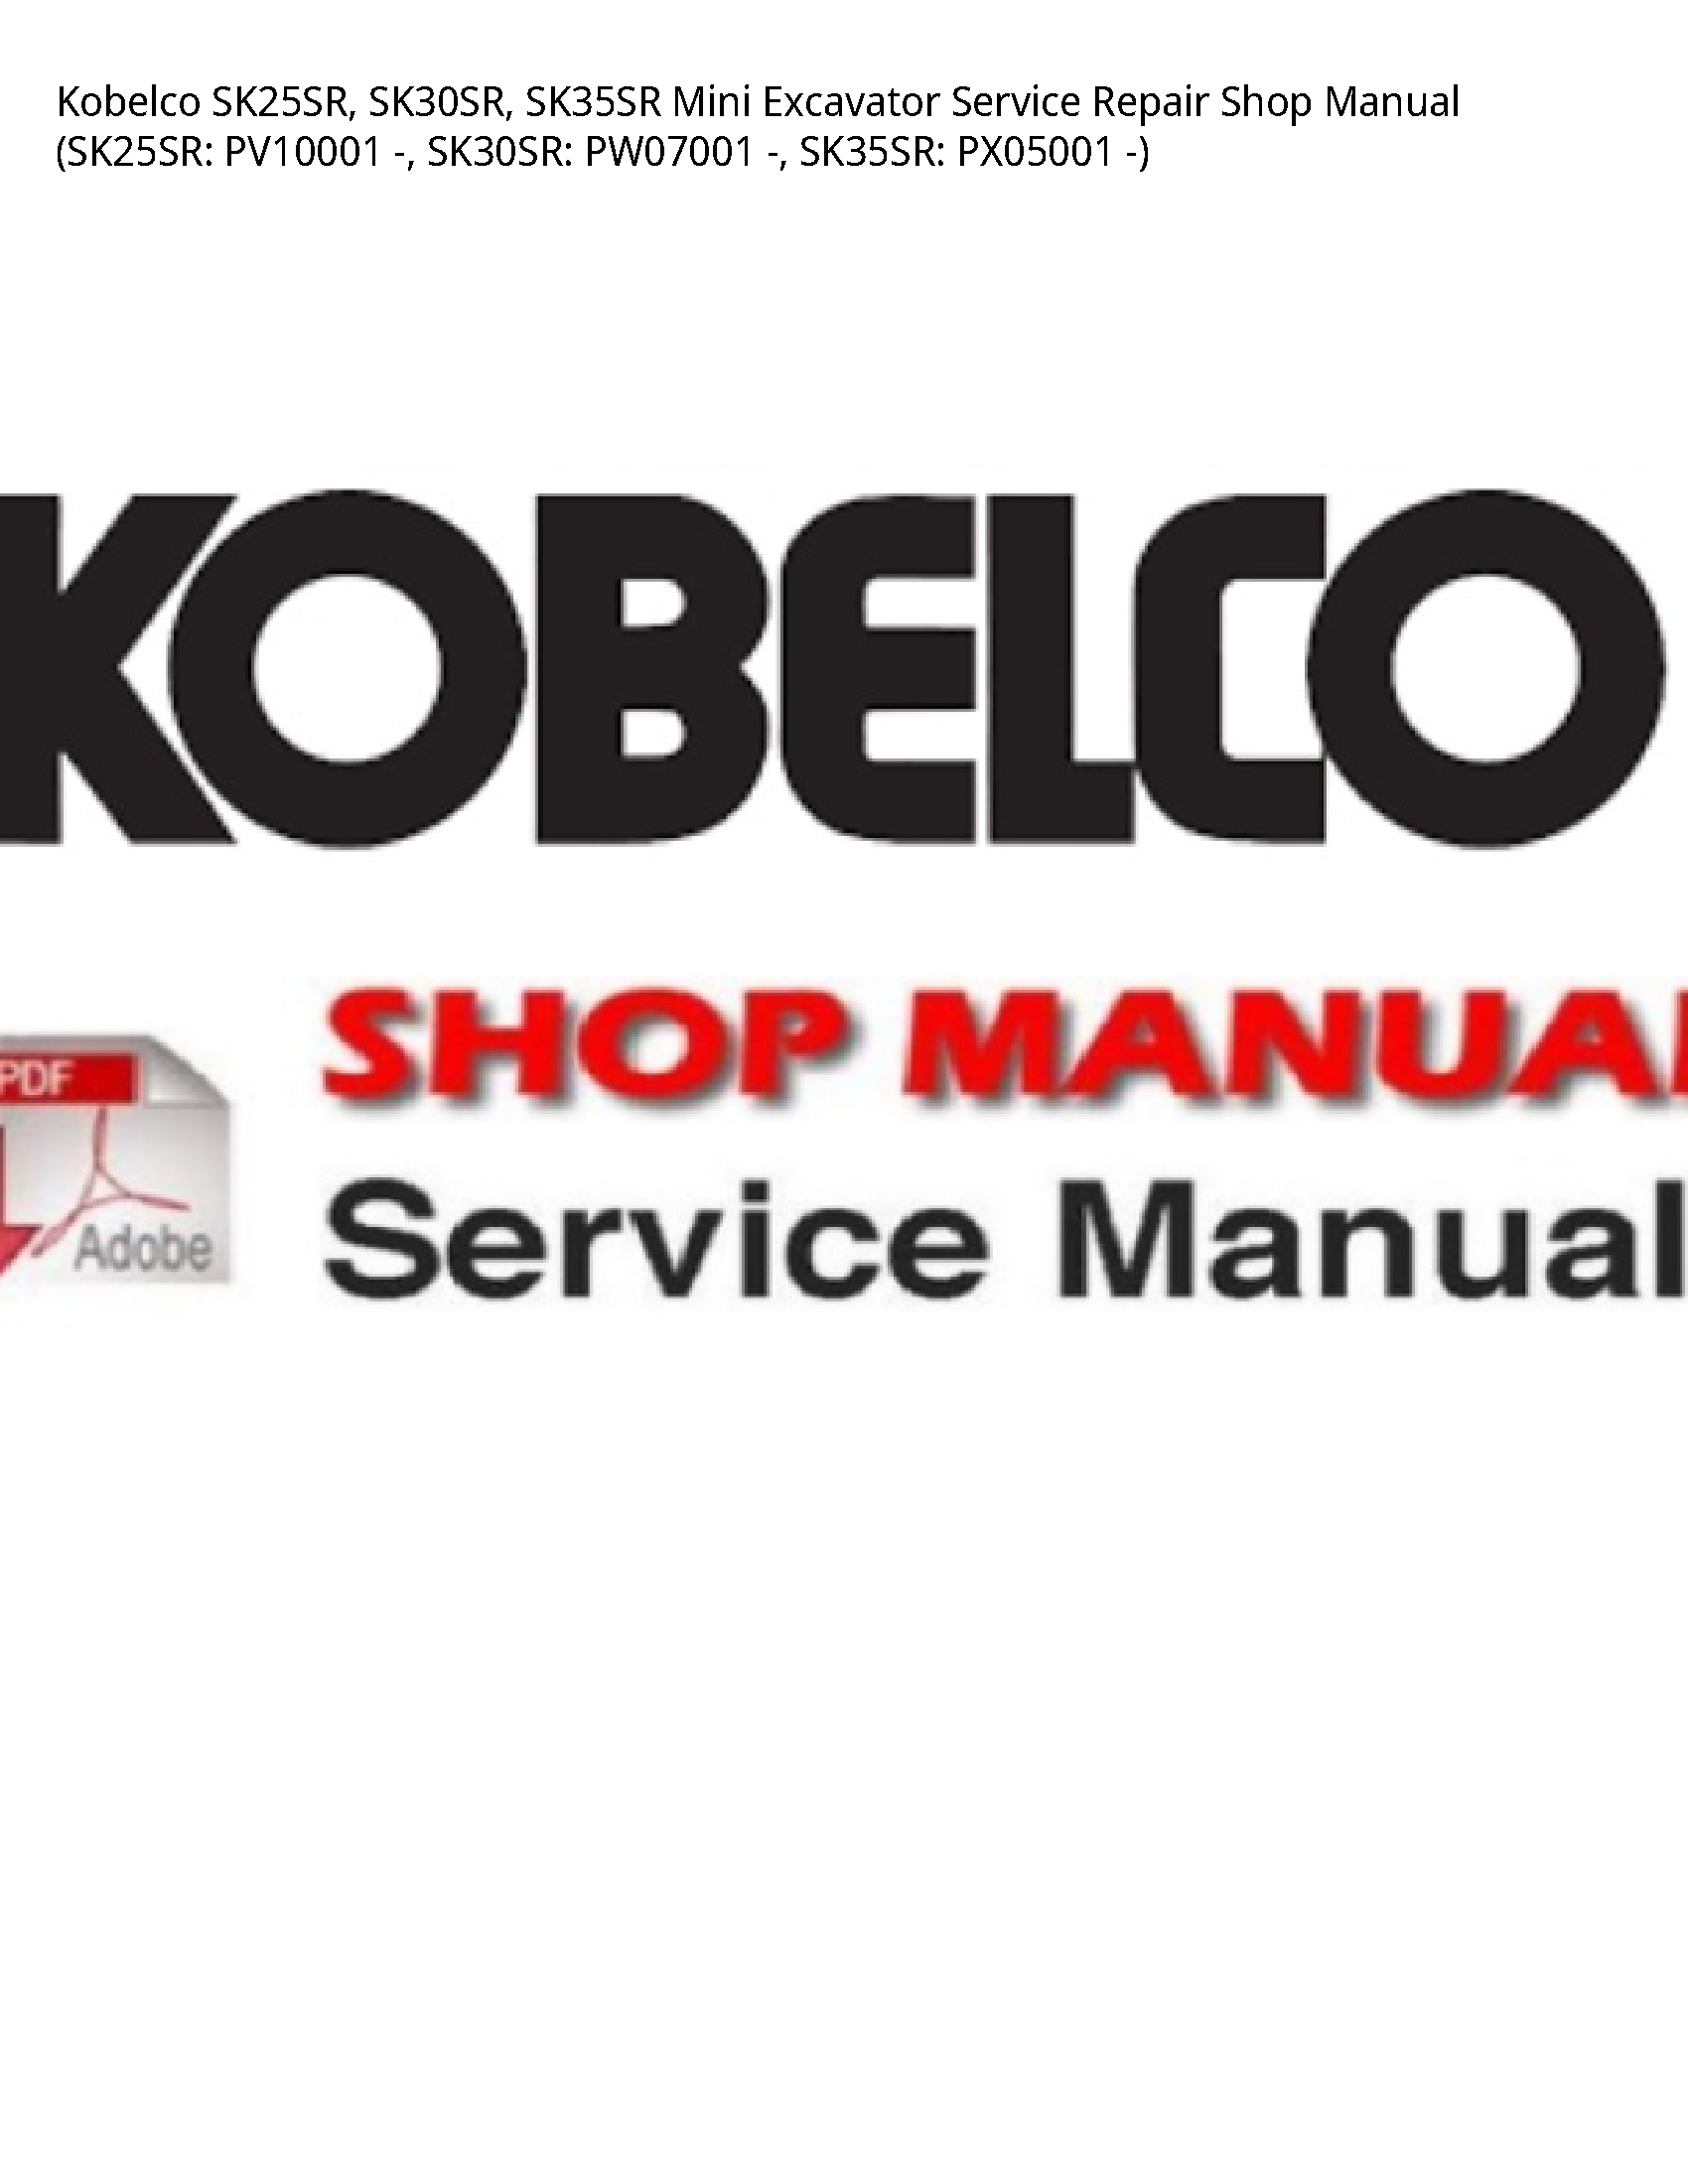 Kobelco SK25SR Mini Excavator manual